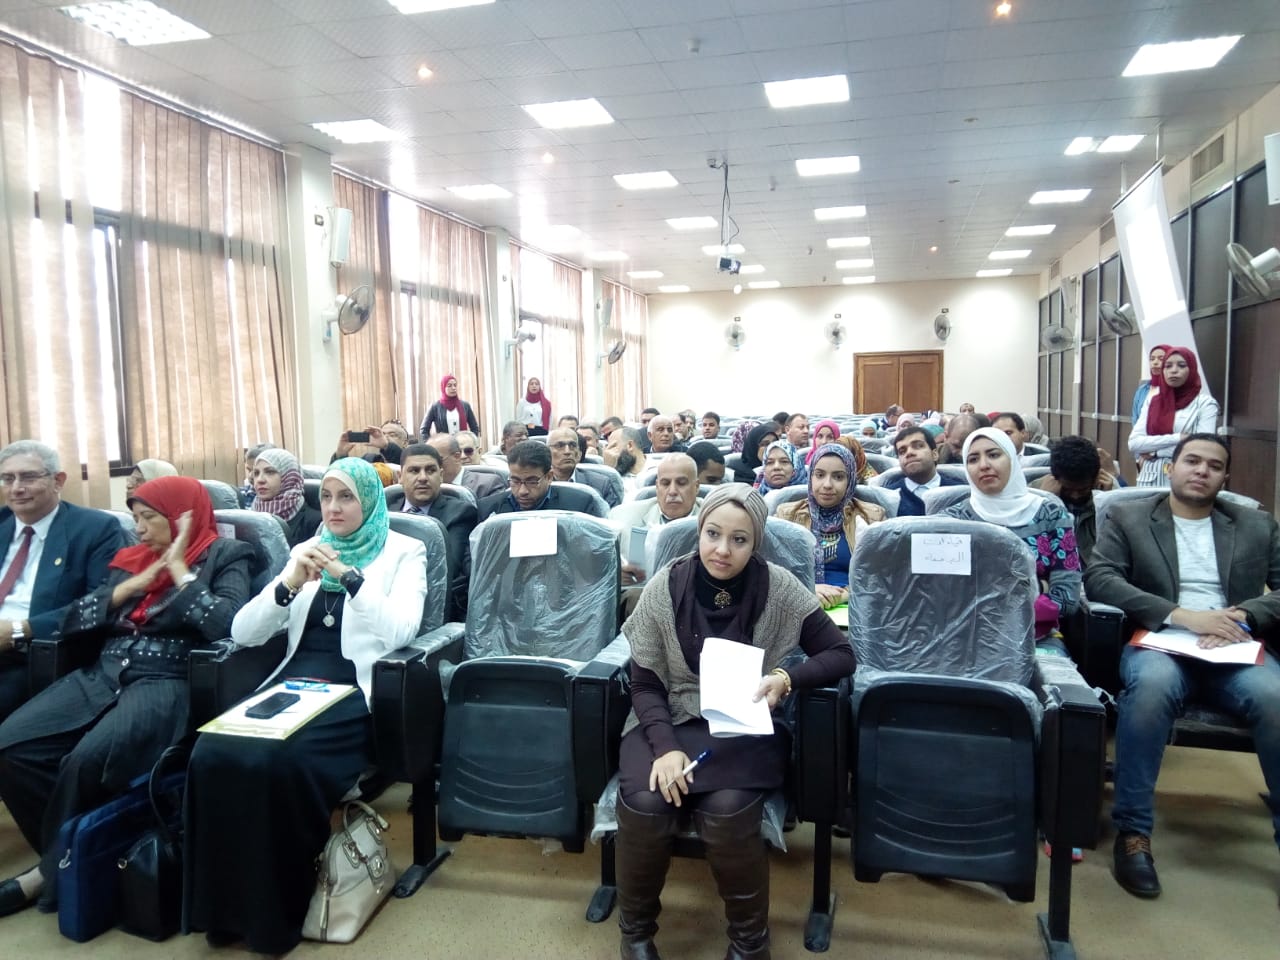 انطلاق اليوم الأول من فاعليات المؤتمر العلمى الثانى لذوى الاحتياجات الخاصة بجامعة حلوان (4)